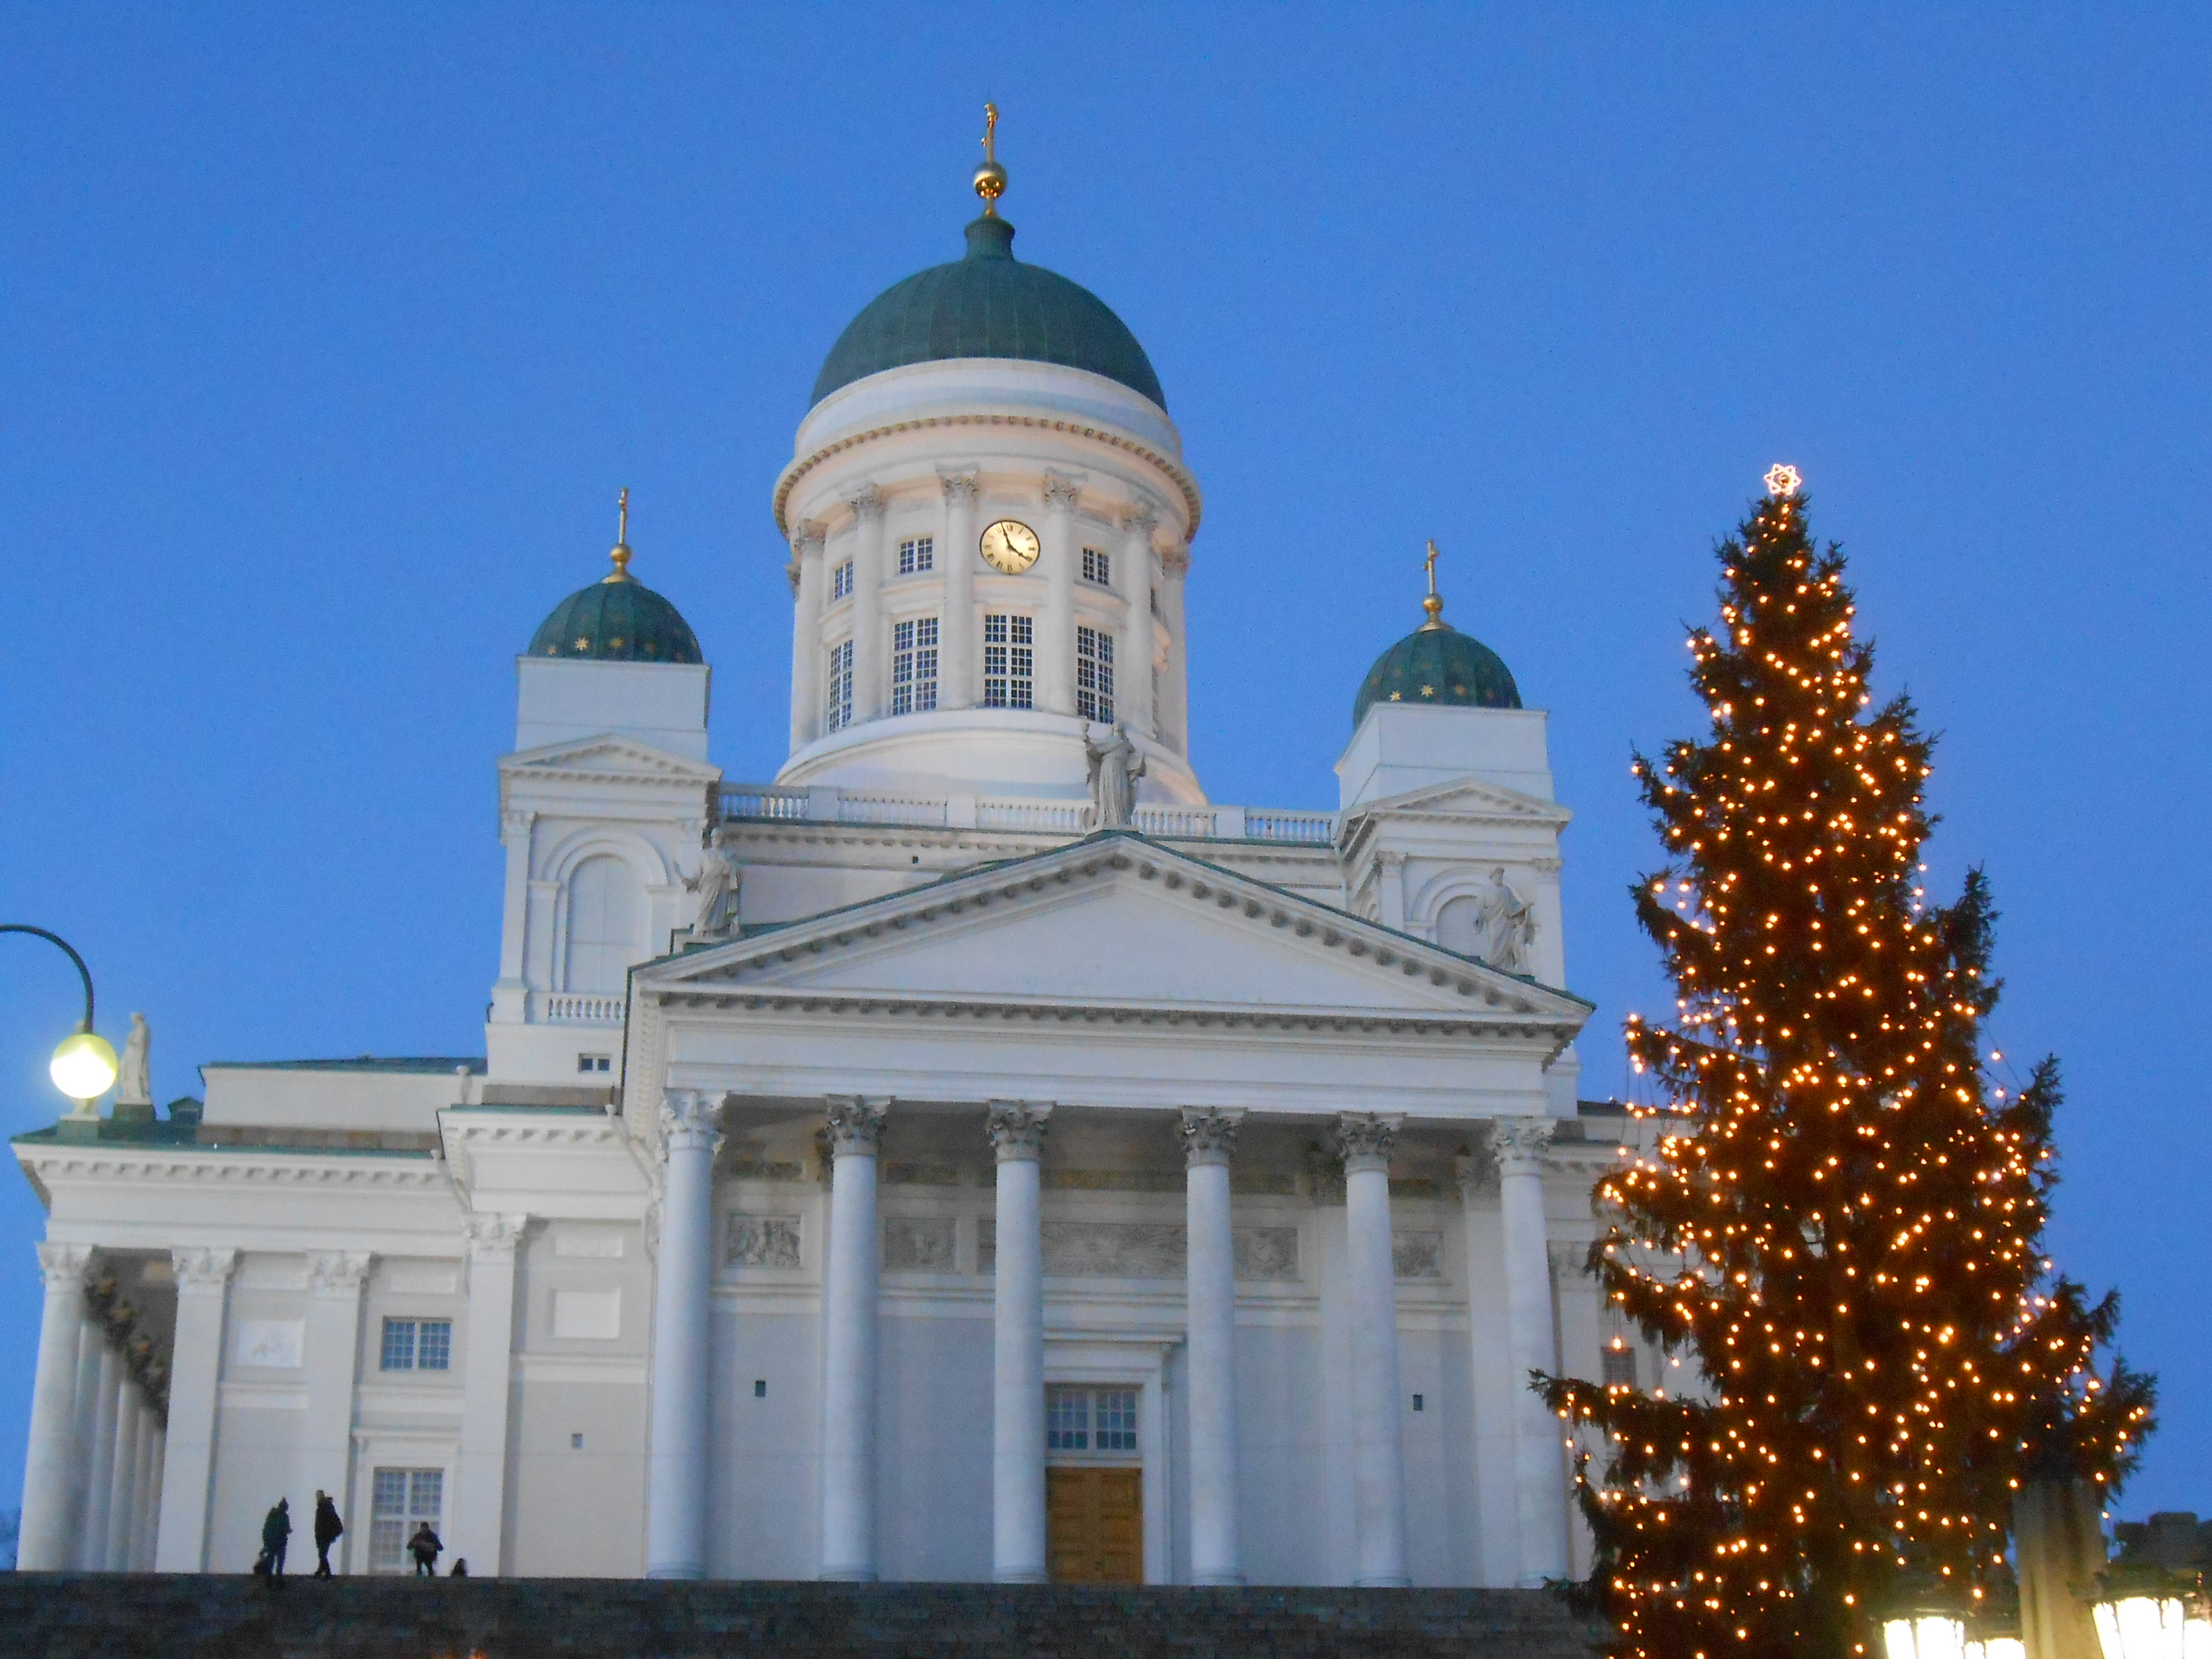 Weihnachtliches Helsinki